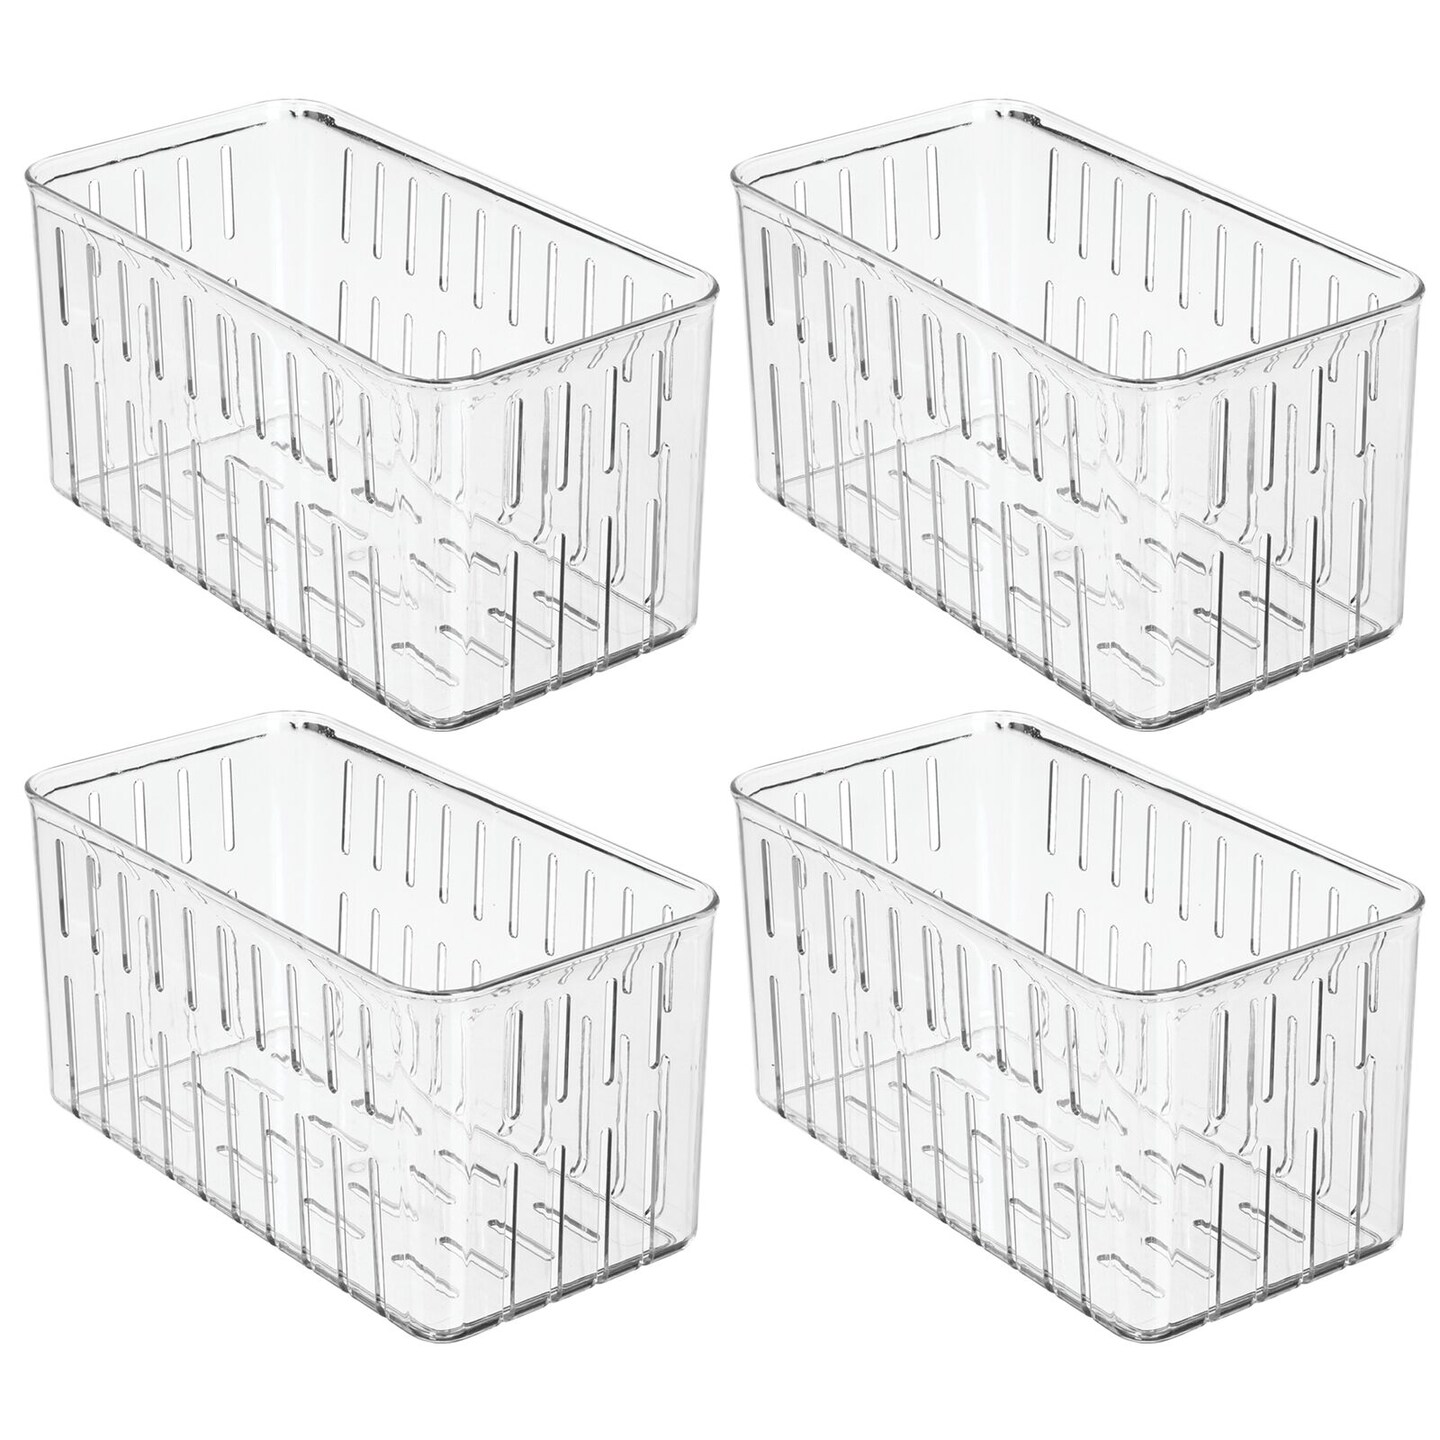 mDesign Vented Fridge Storage Bin Basket for Fruit, Vegetables, 4 Pack - Clear - Clear